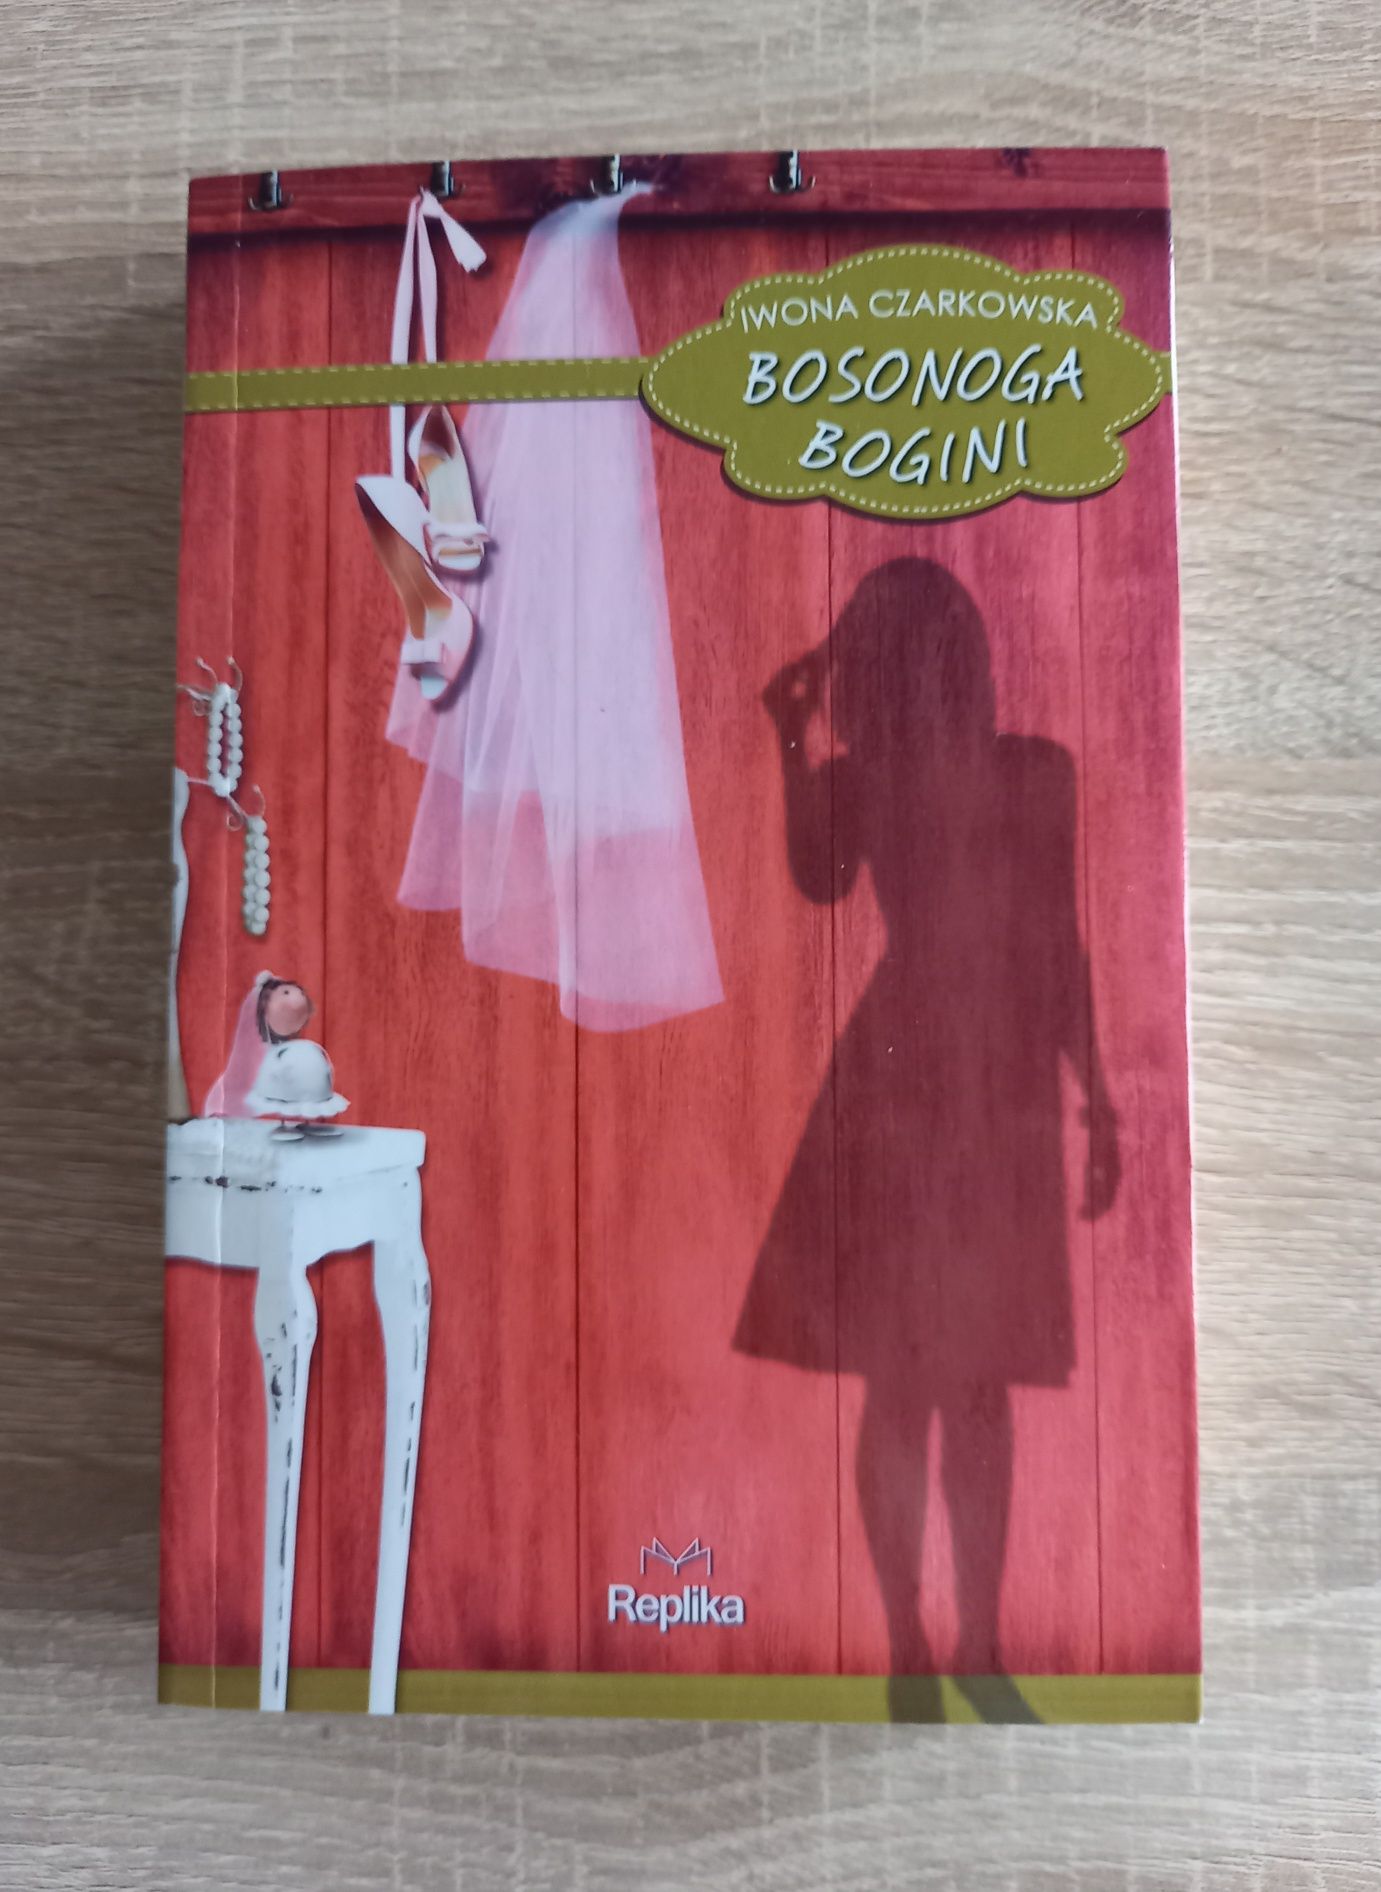 "Bosonoga bogini" "Bokserka"
Autor: Iwona Czarkowska